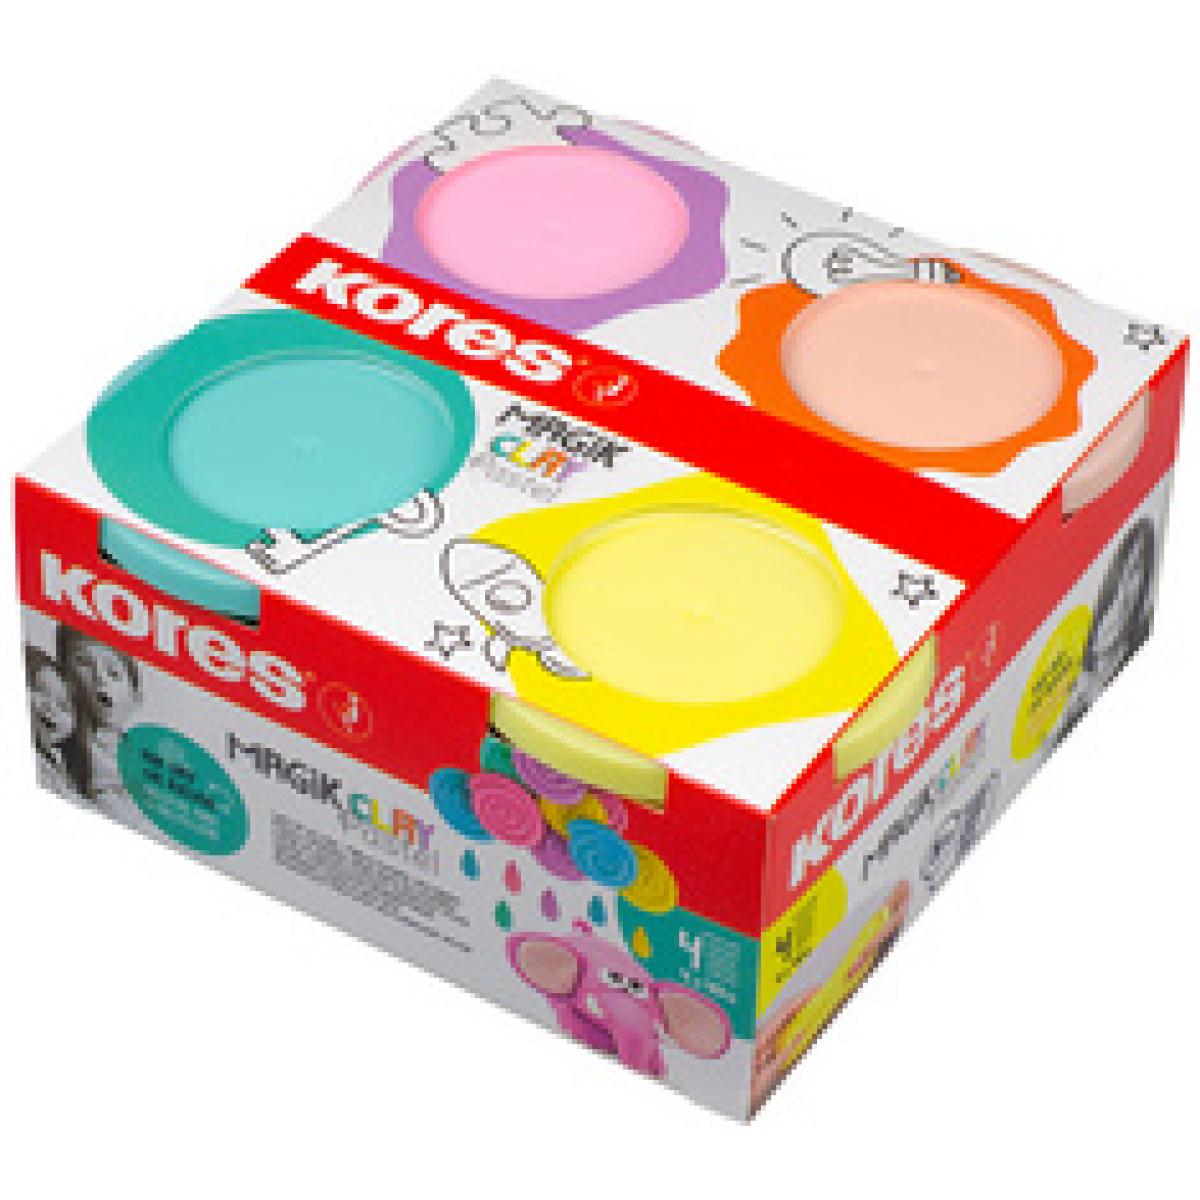 Spielknete 'Magic Clay Pastel', farbig sortiert Kores KM34242 (9023800342423)